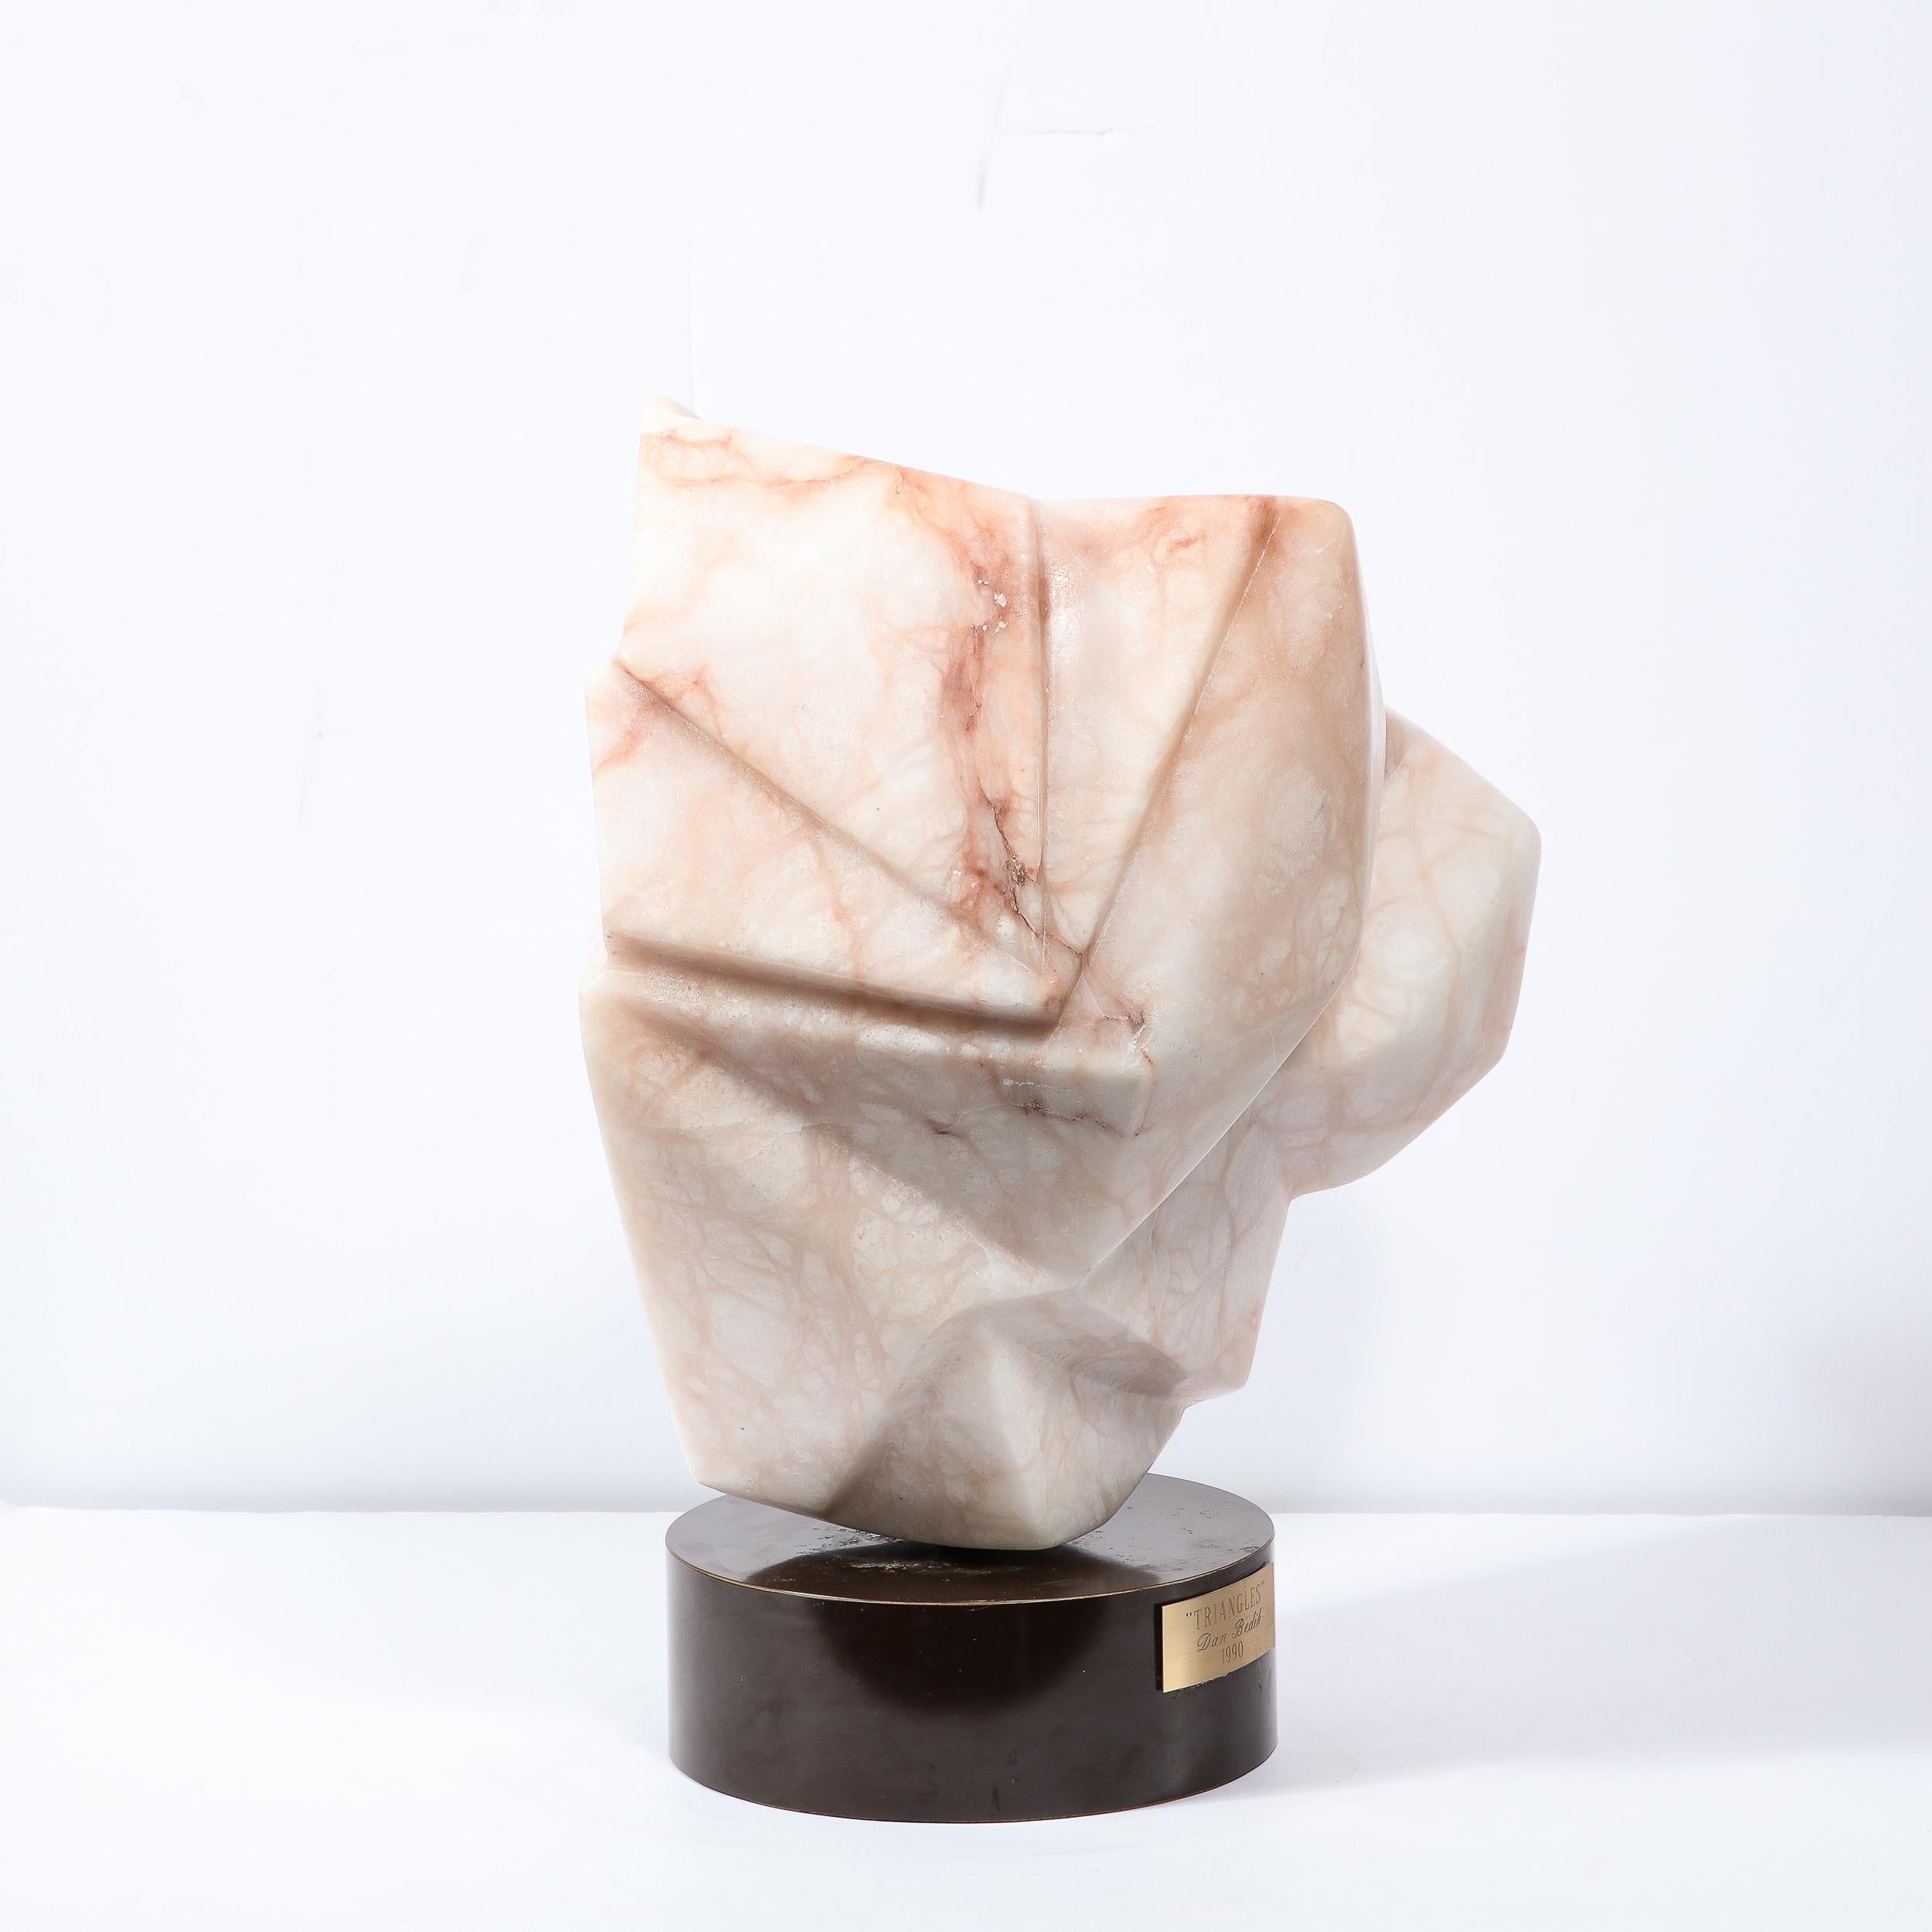 Fin du 20e siècle Sculpture géométrique abstraite moderniste abstraite en marbre exotique, « Triangles », de Dan Bedik  en vente